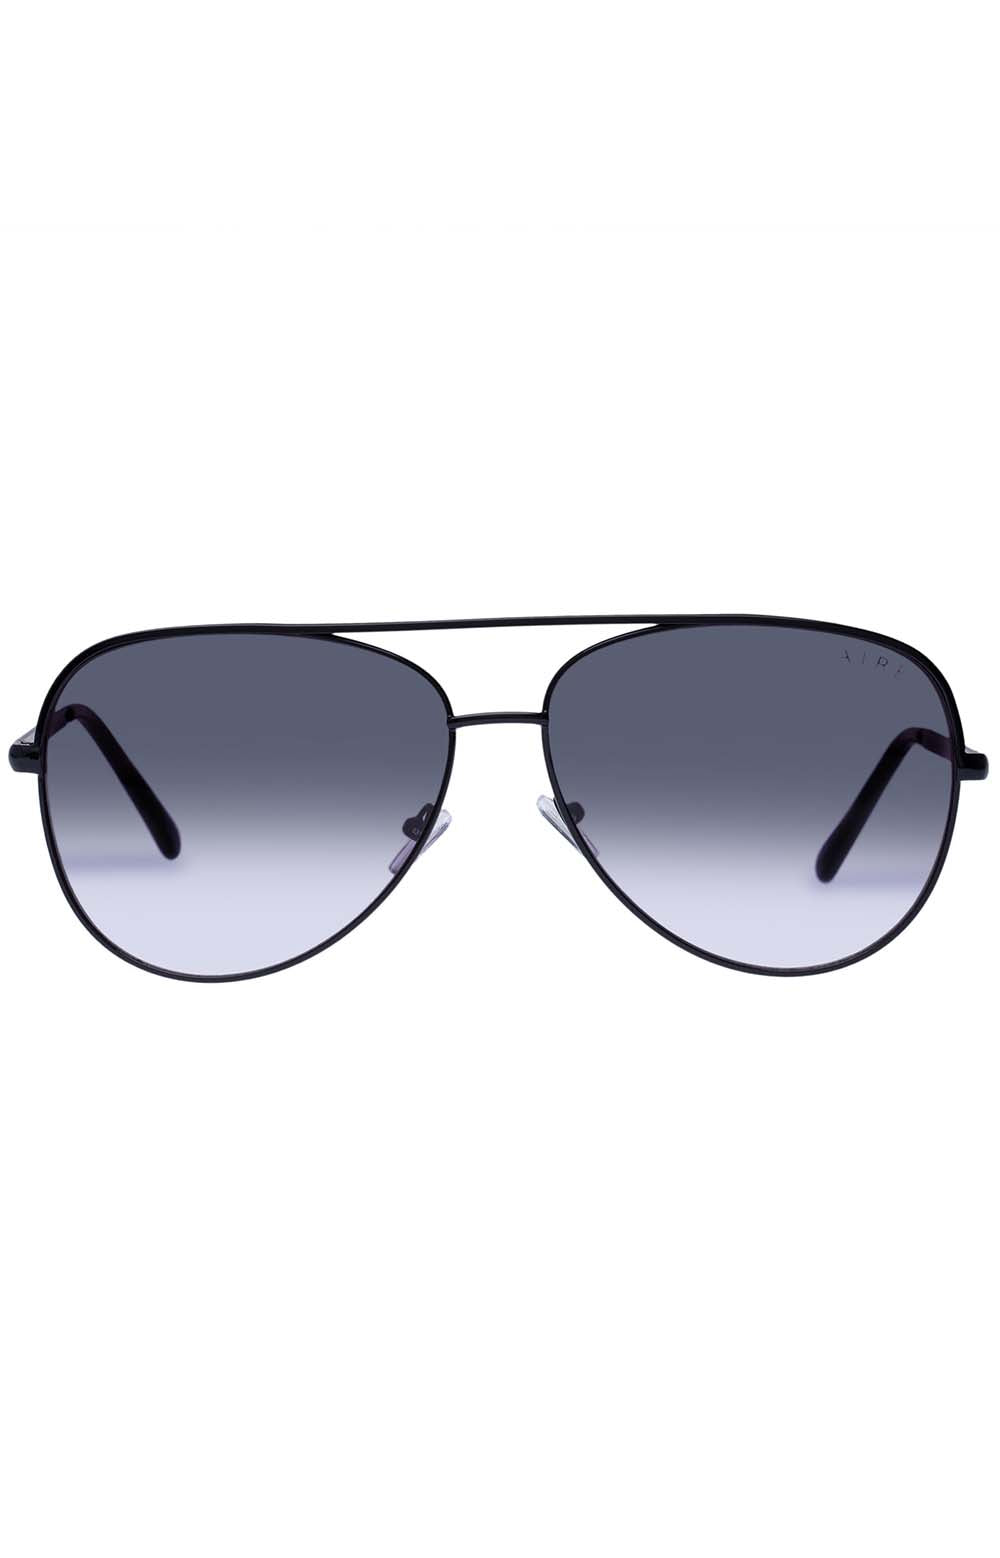 Atmosphere V2 Sunglasses - Black